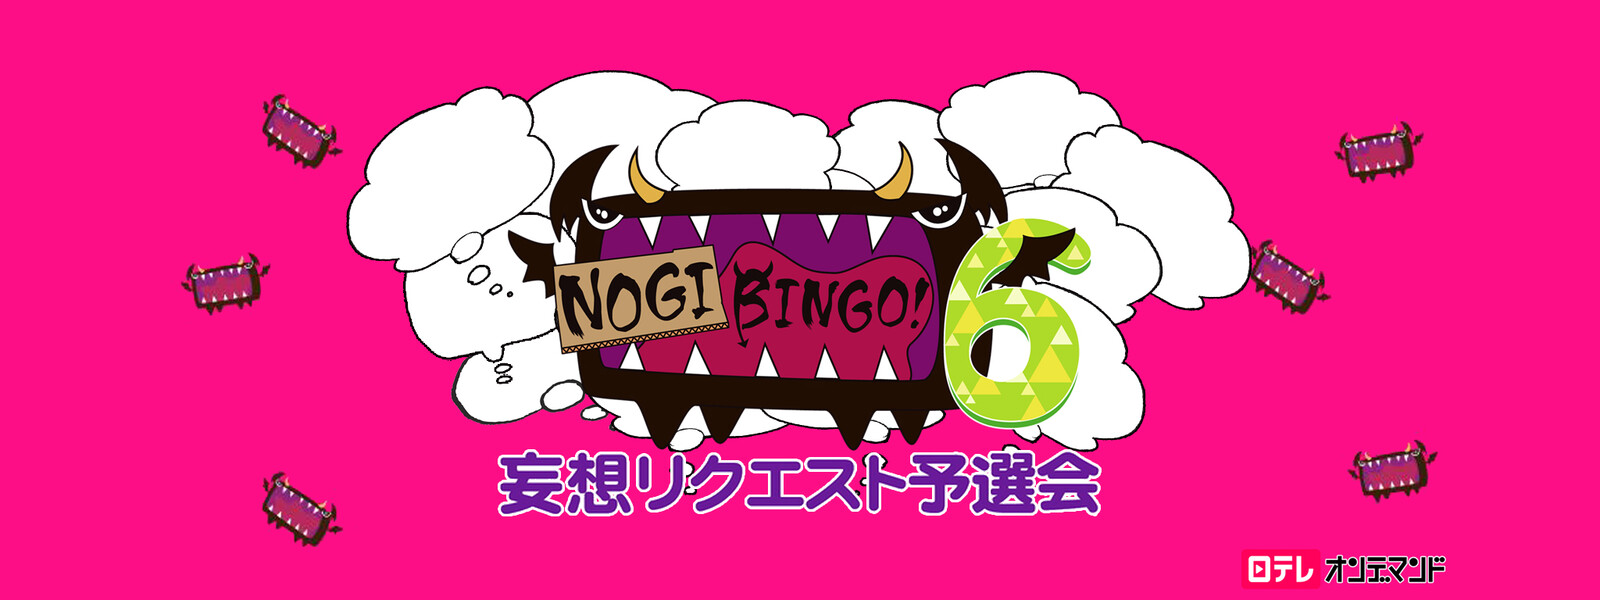 NOGIBINGO! 6 妄想リクエスト予選会の動画 - NOGIBINGO! 7 妄想リクエスト予選会